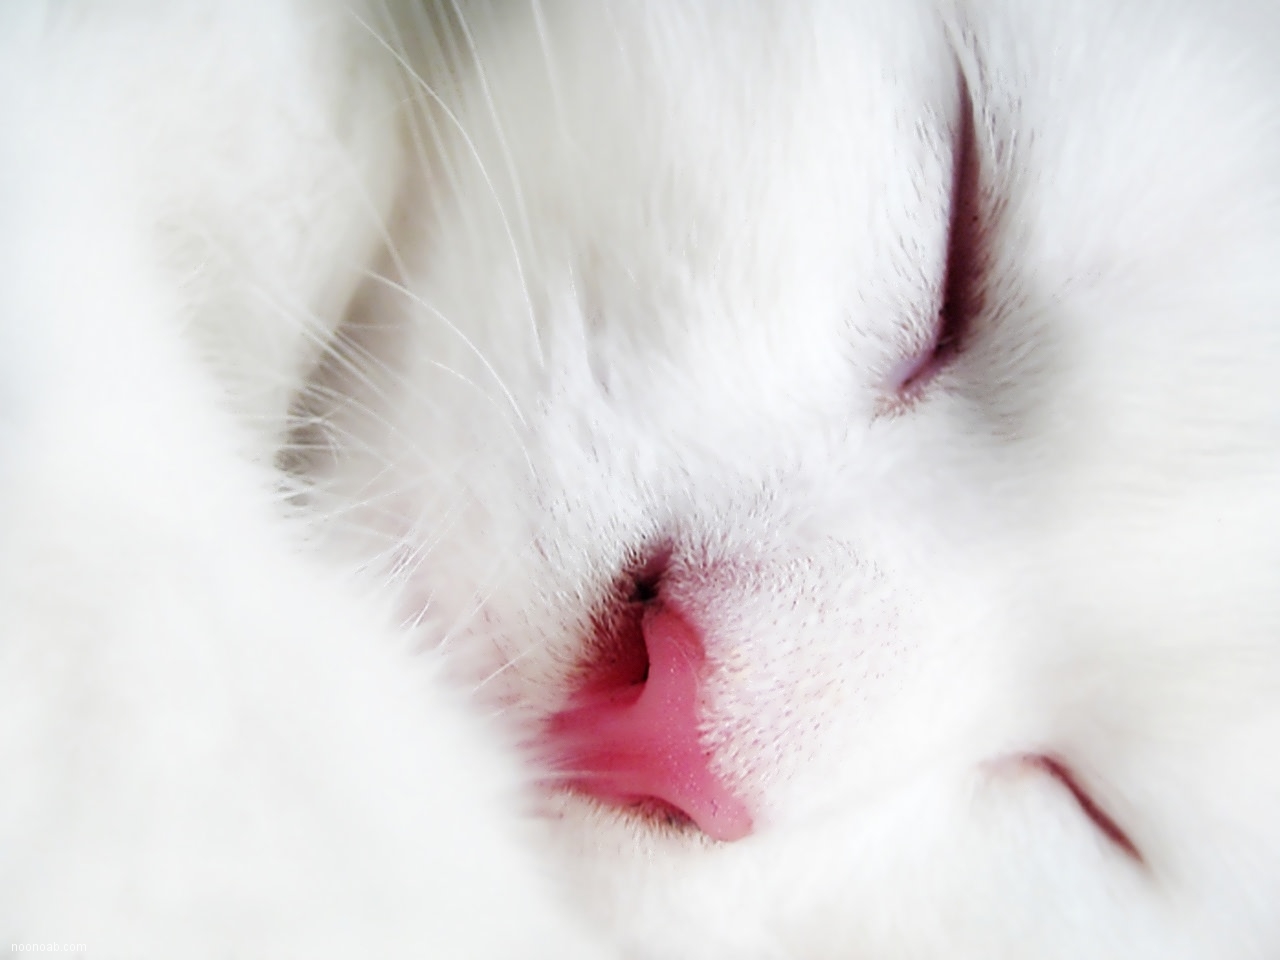 عکس گربه های ملوس زیبا